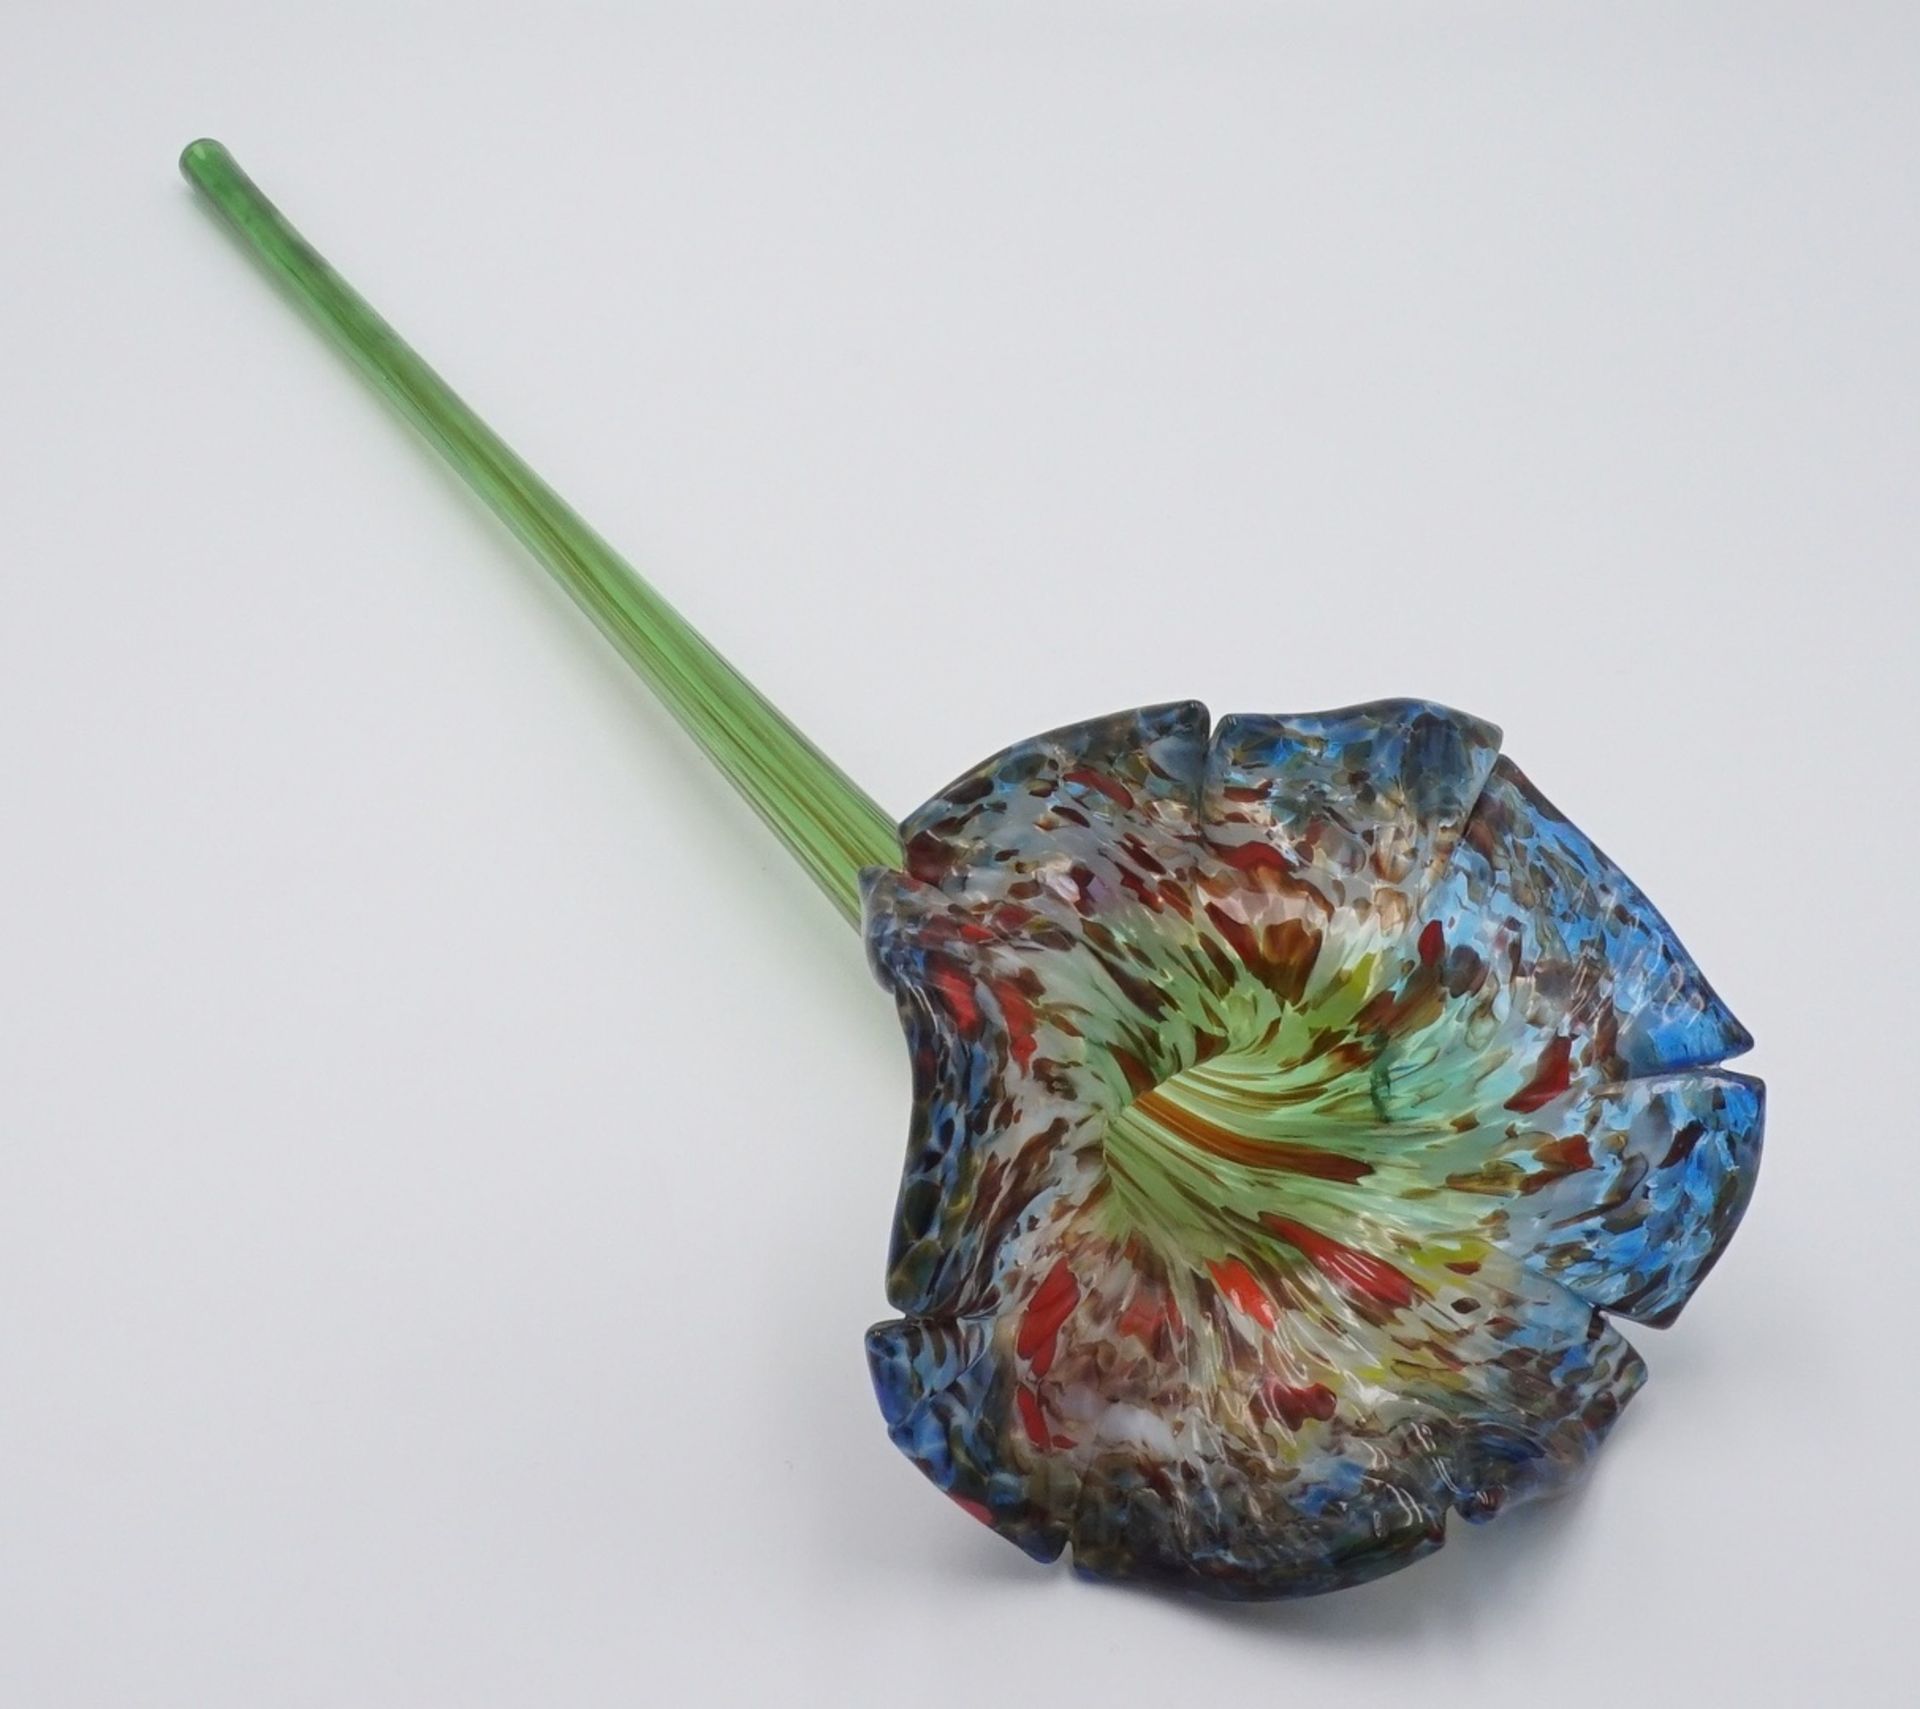 Mundgeblasene Lilie, Tischvase, 20. Jh.Glas, farbig mit eingeschmolzenen Farben, durchgängig